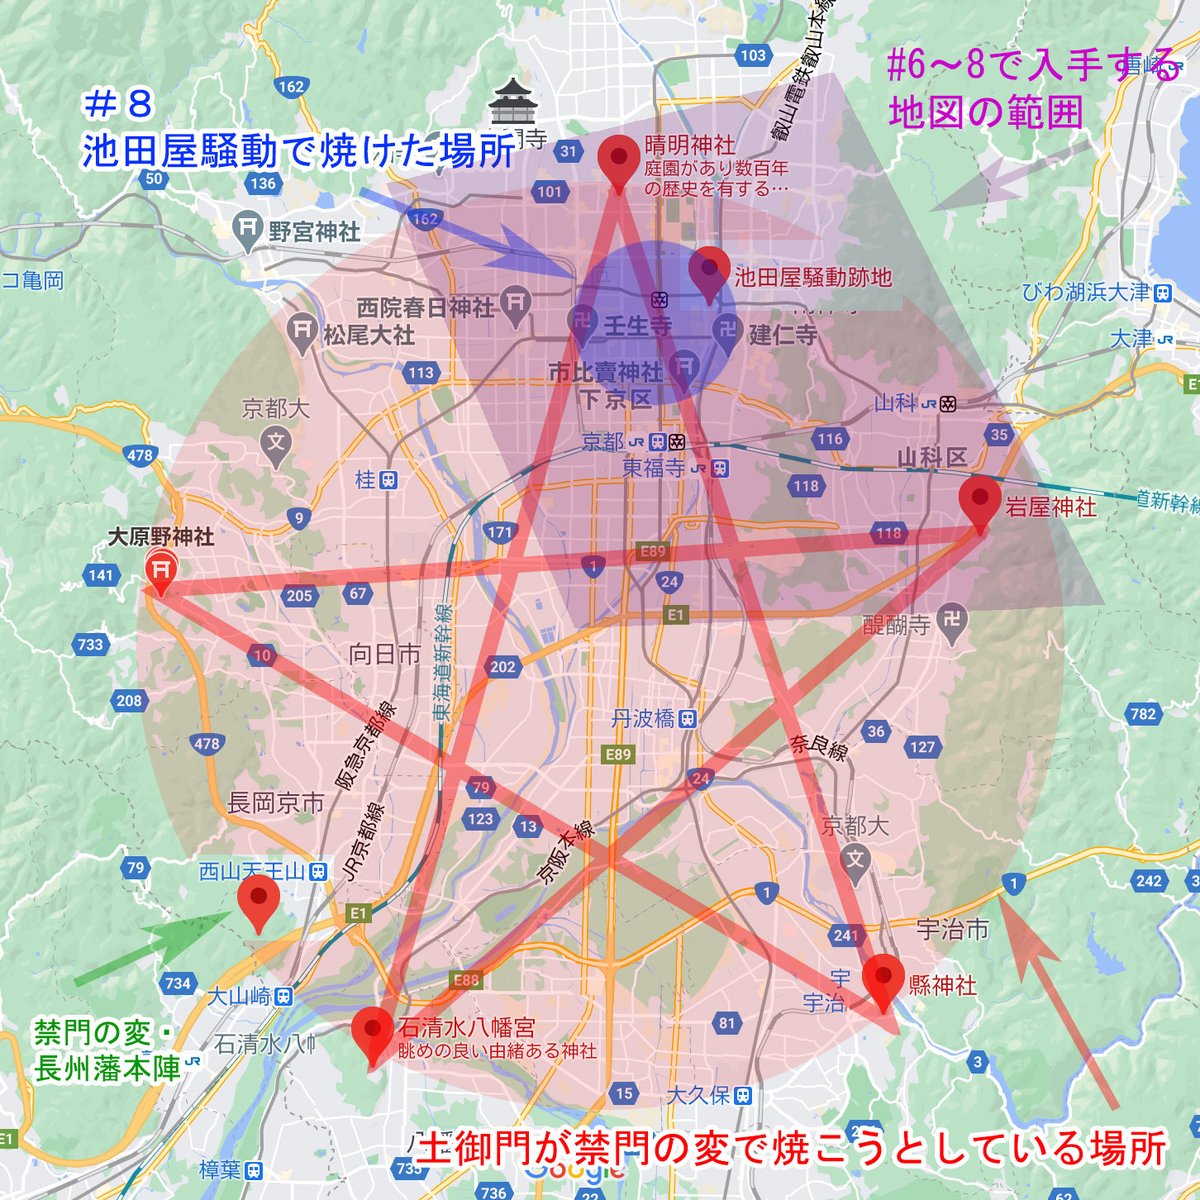 アニメ『#ブッチギレ!』の監督イメージボードとスタッフに配布した資料です。第6話の白川屋・地下の謎の絵ところ。Googleマップの京都五芒星は、オカルトとか都市伝説に詳しい人にはおなじみかもしれません。 #bucchigire 